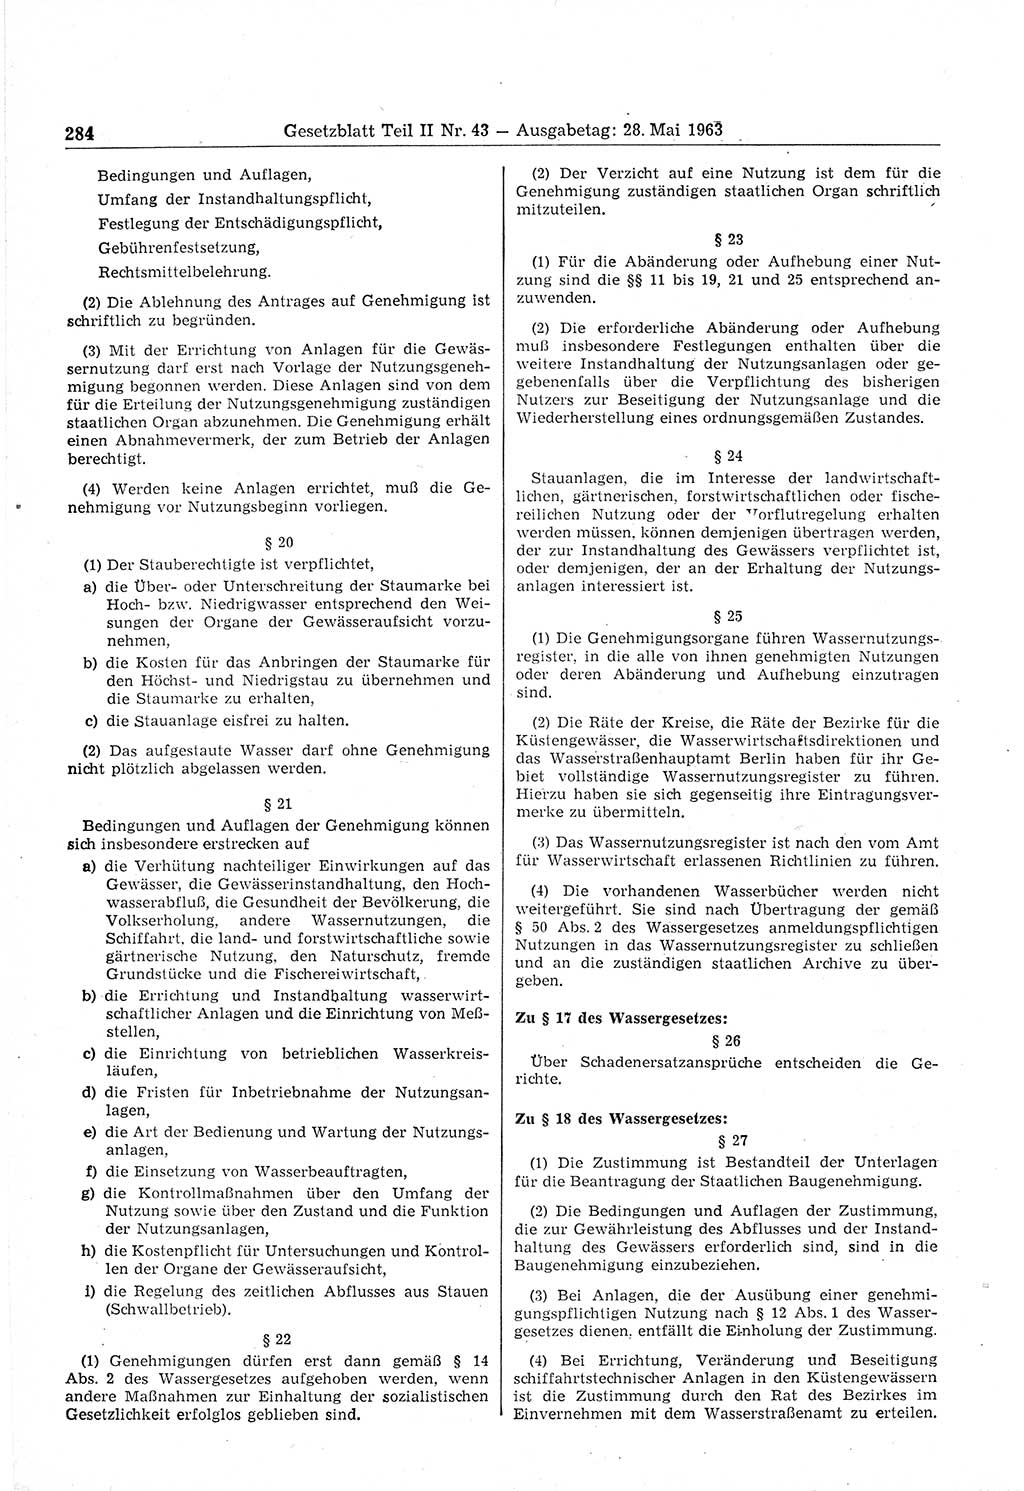 Gesetzblatt (GBl.) der Deutschen Demokratischen Republik (DDR) Teil ⅠⅠ 1963, Seite 284 (GBl. DDR ⅠⅠ 1963, S. 284)